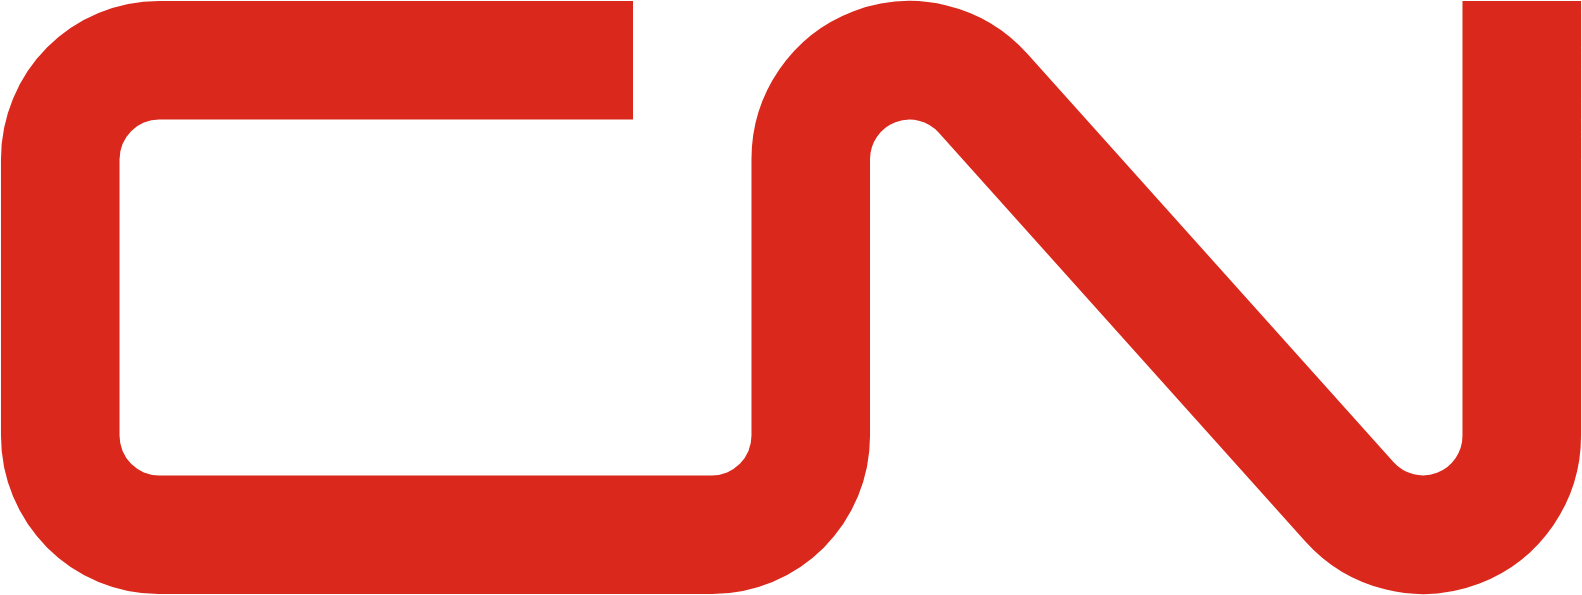 Canadian National Railway logo (transparent PNG)